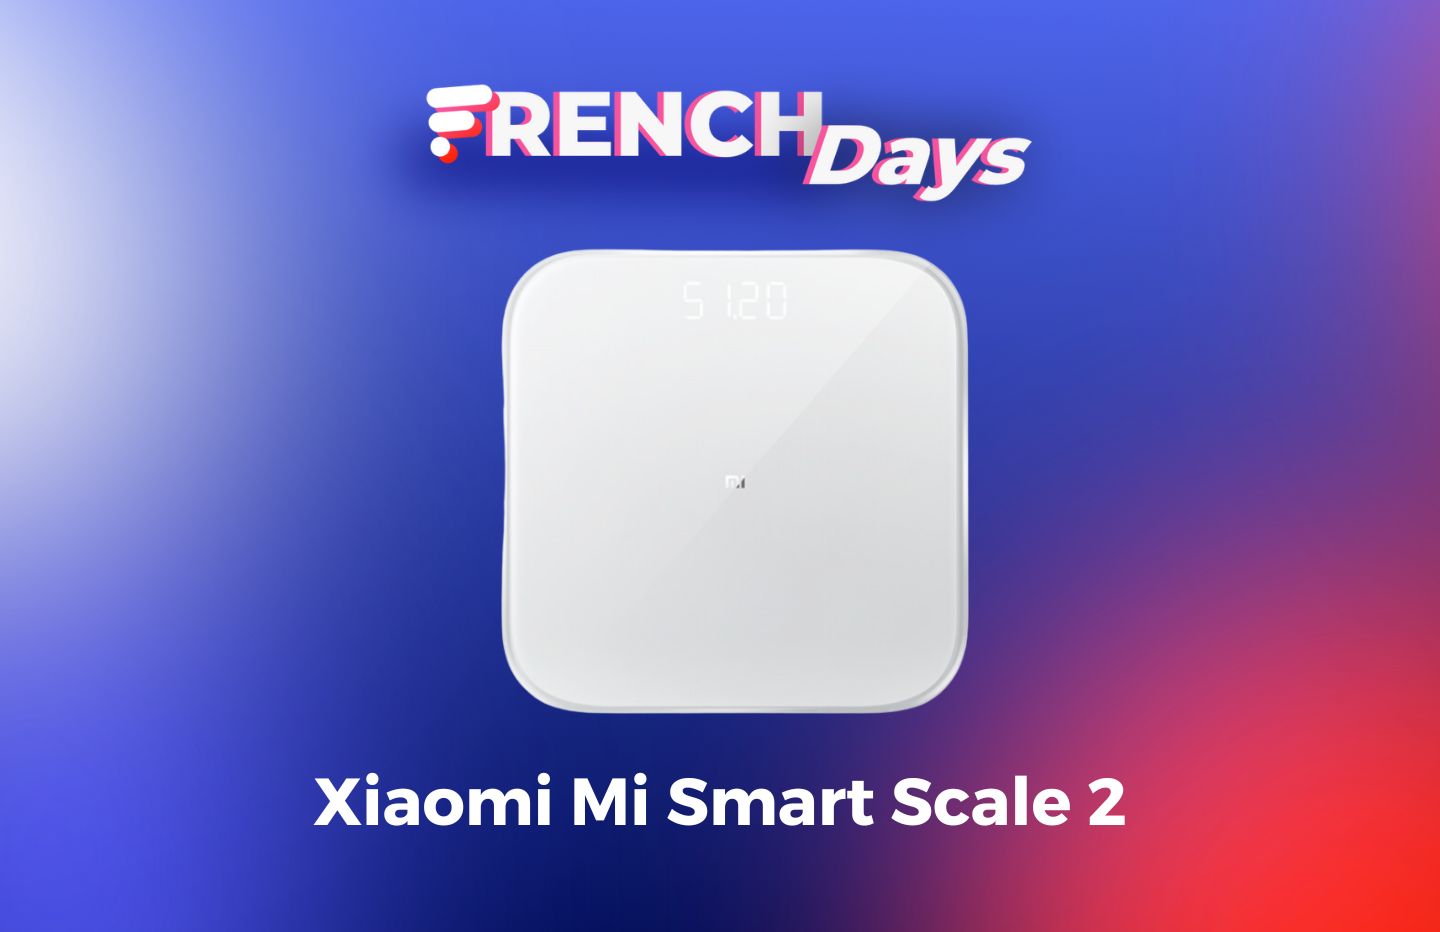 La balance connectée de Xiaomi revient à prix très bas pour les French Days